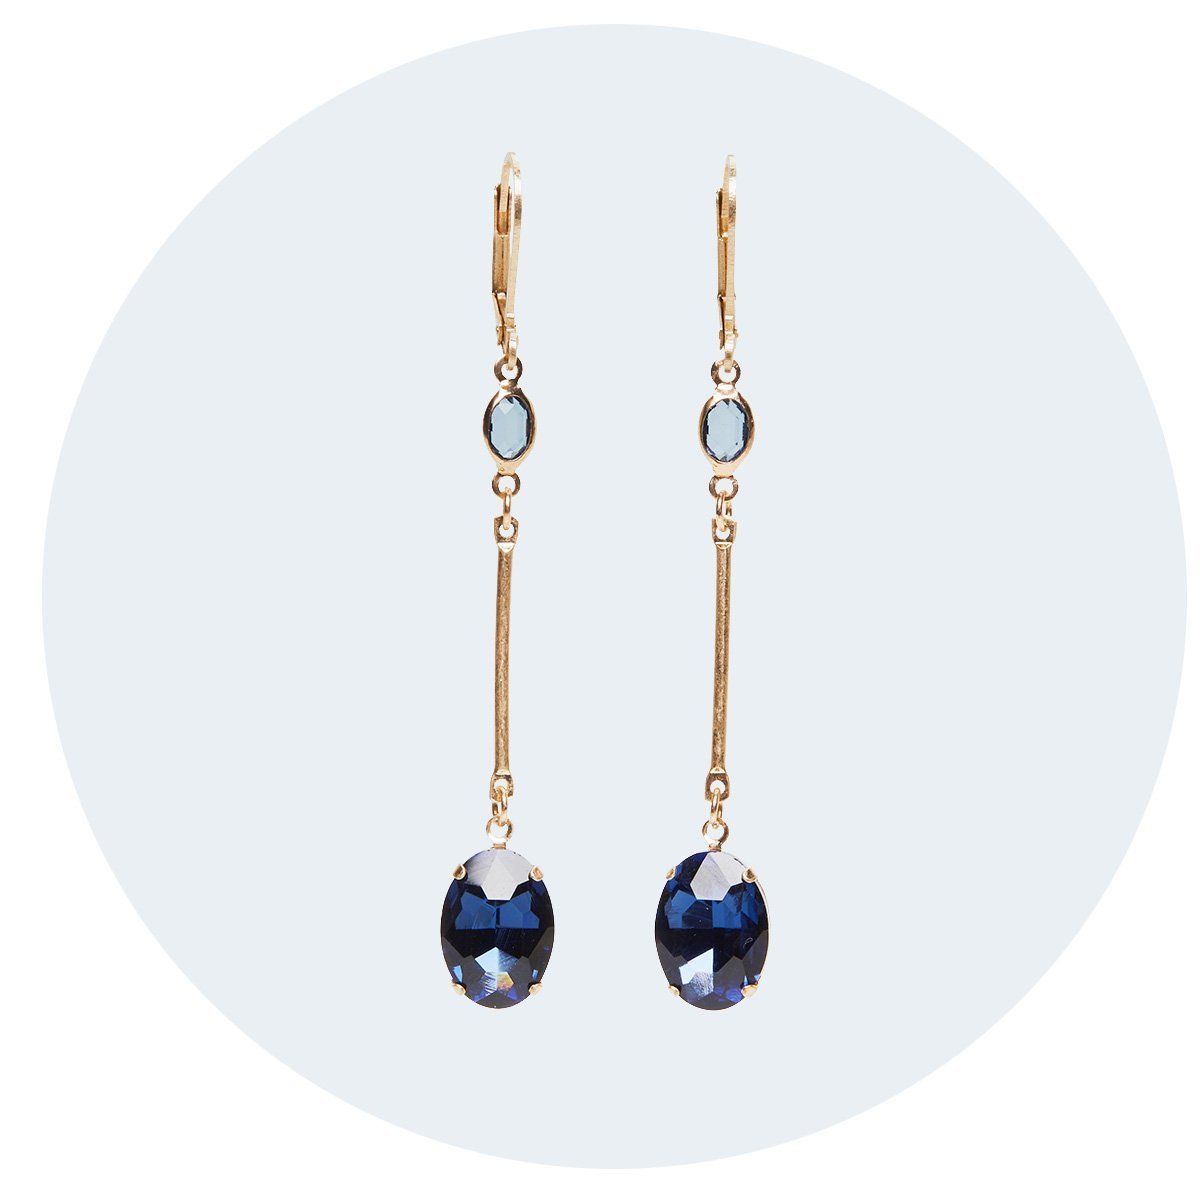 Elegant long drop earrings Camilla in blue